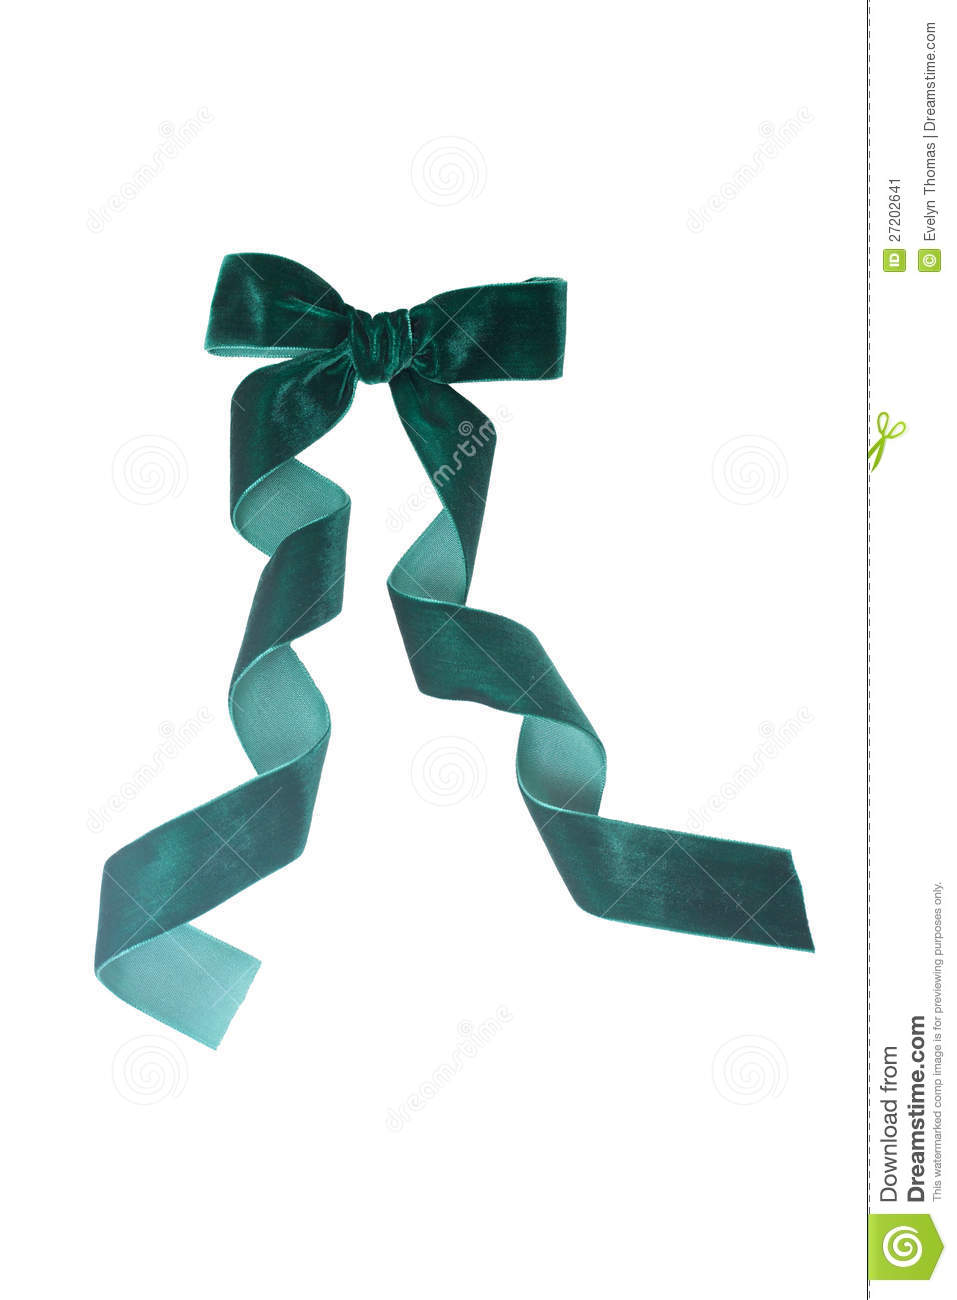 Green Velvet Ribbon Isolated On White Stock Image   Image  27202641